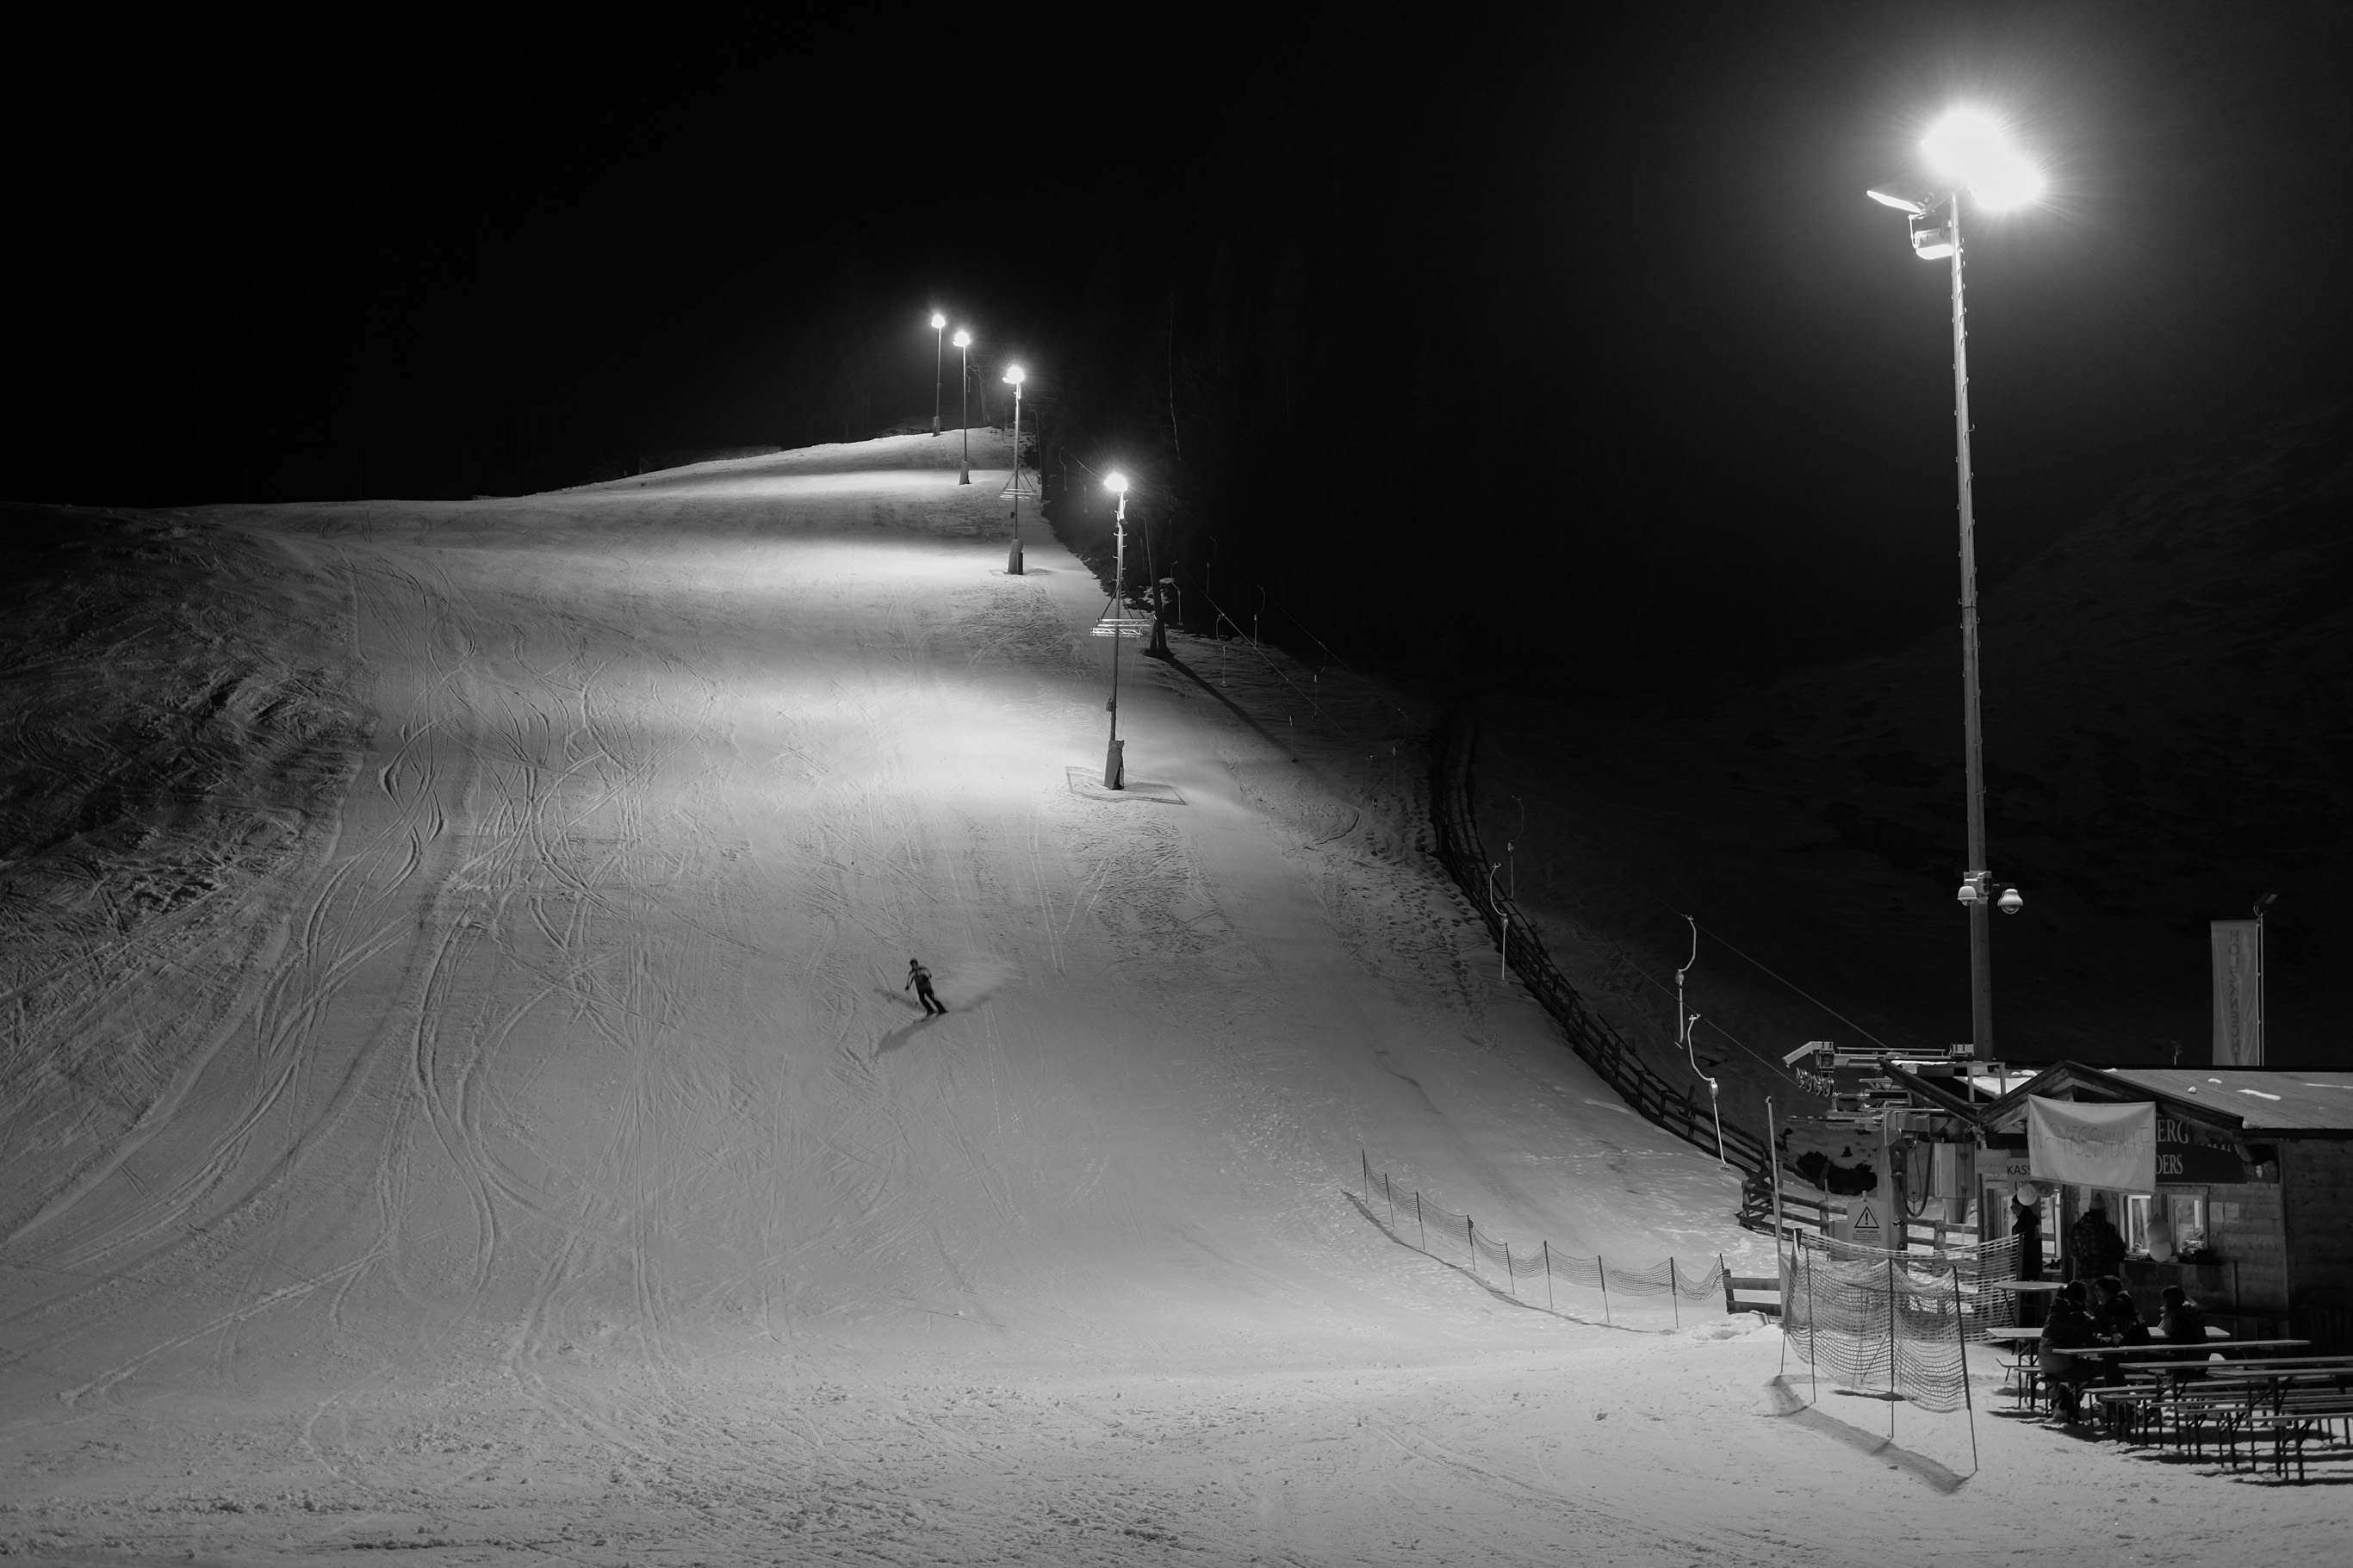 Night skier, Neustift